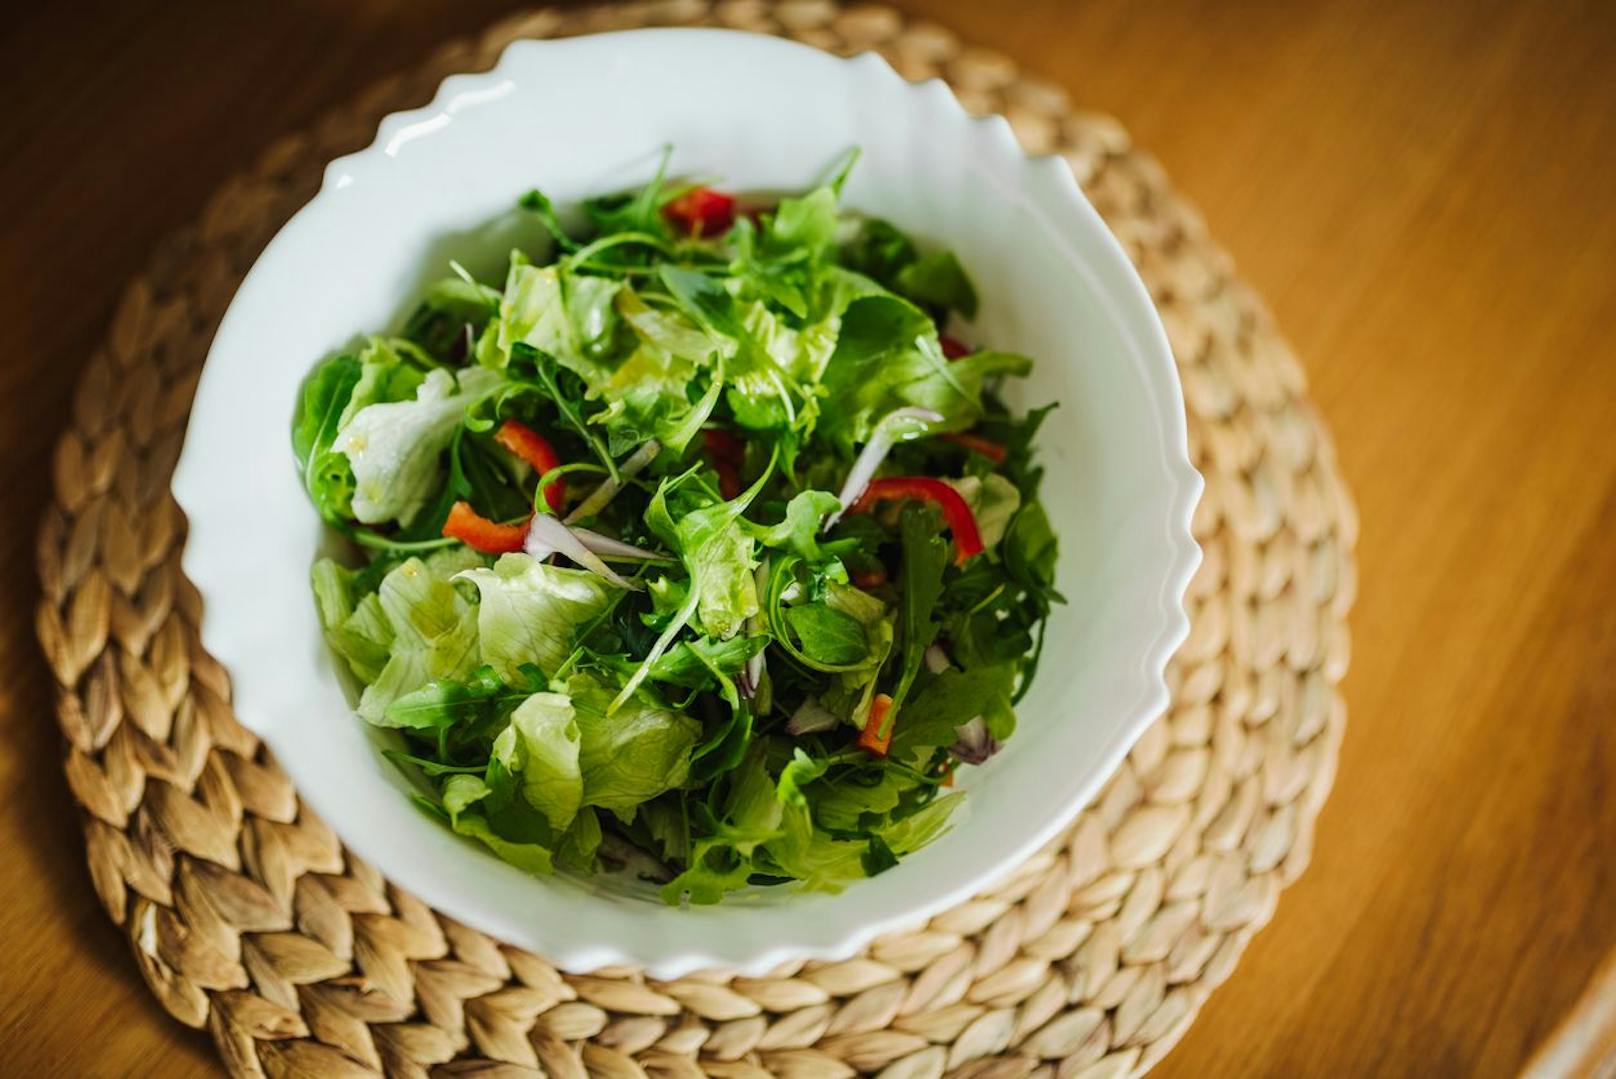 Wer gesund sein will isst einen leckeren Blattsalat zu Abend. Doch dieses enthält viele Gase, die deiner Verdauung kurz vor dem Schlafengehen schadet. Um einen Blähbauch zu vermeiden solltest du am liebsten auf den Salat verzichten.&nbsp;